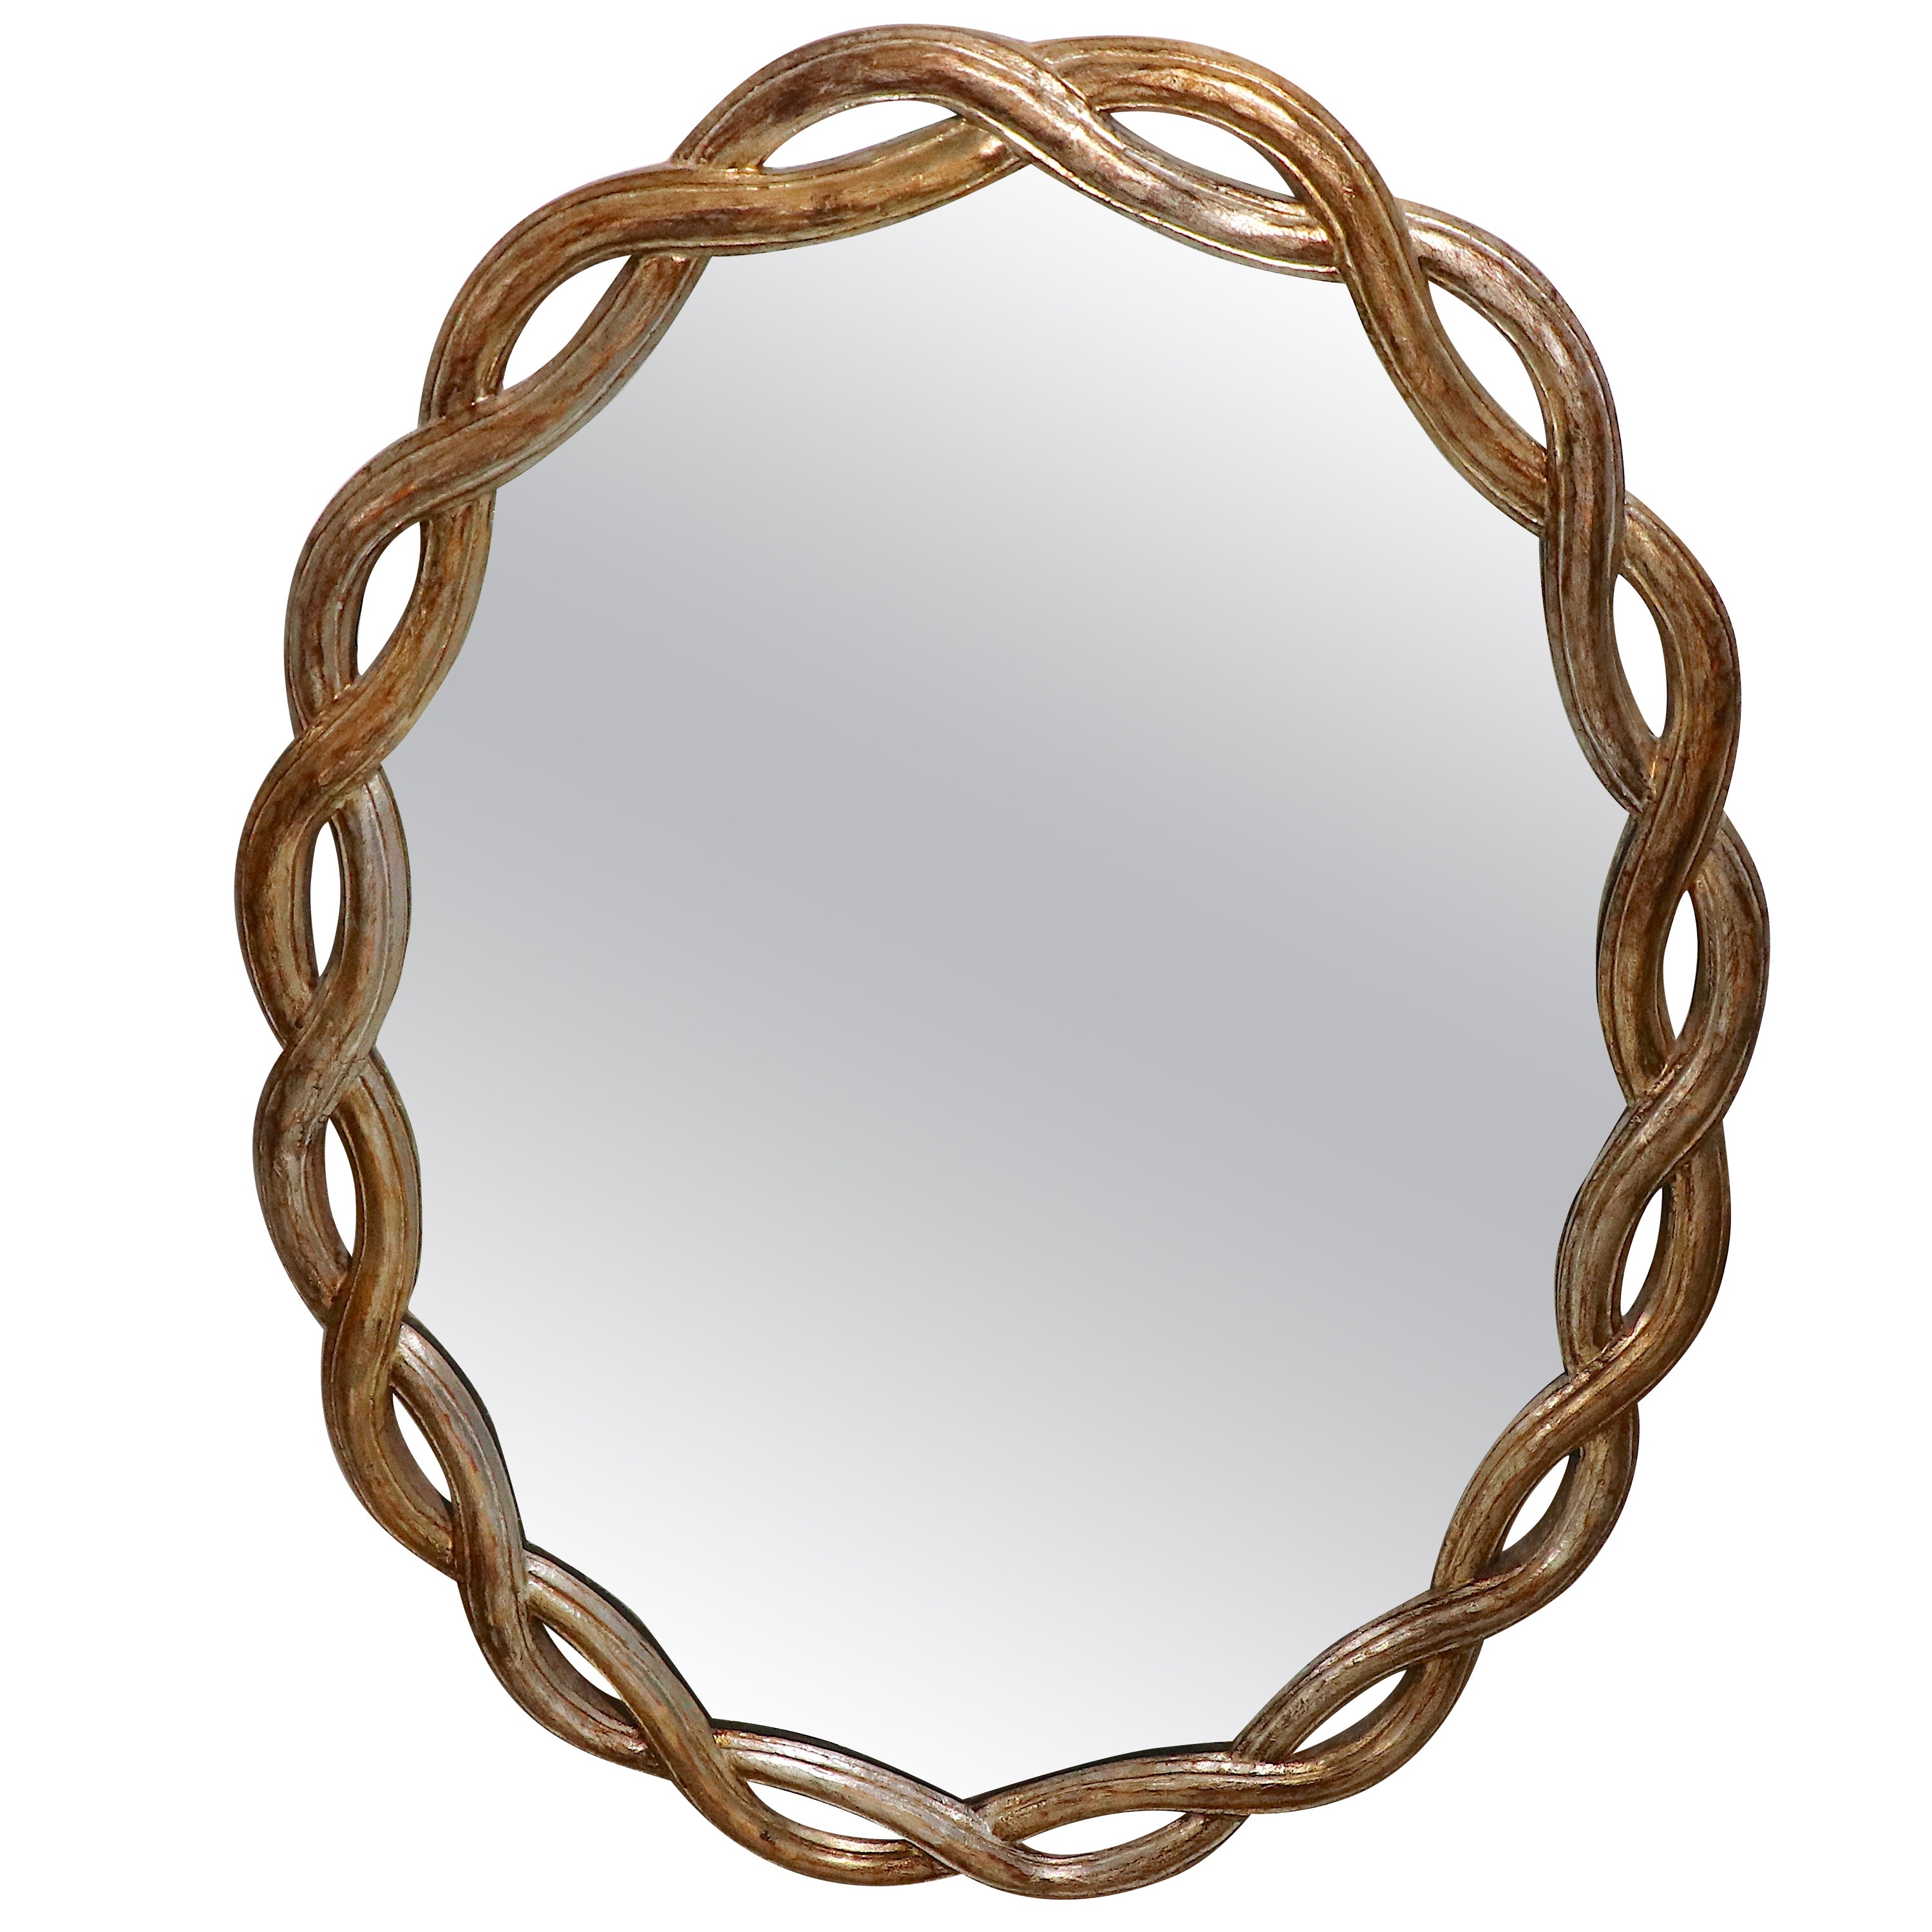 Open Weave Pattern Italian Silver Gilt Wall Mirror For Sale